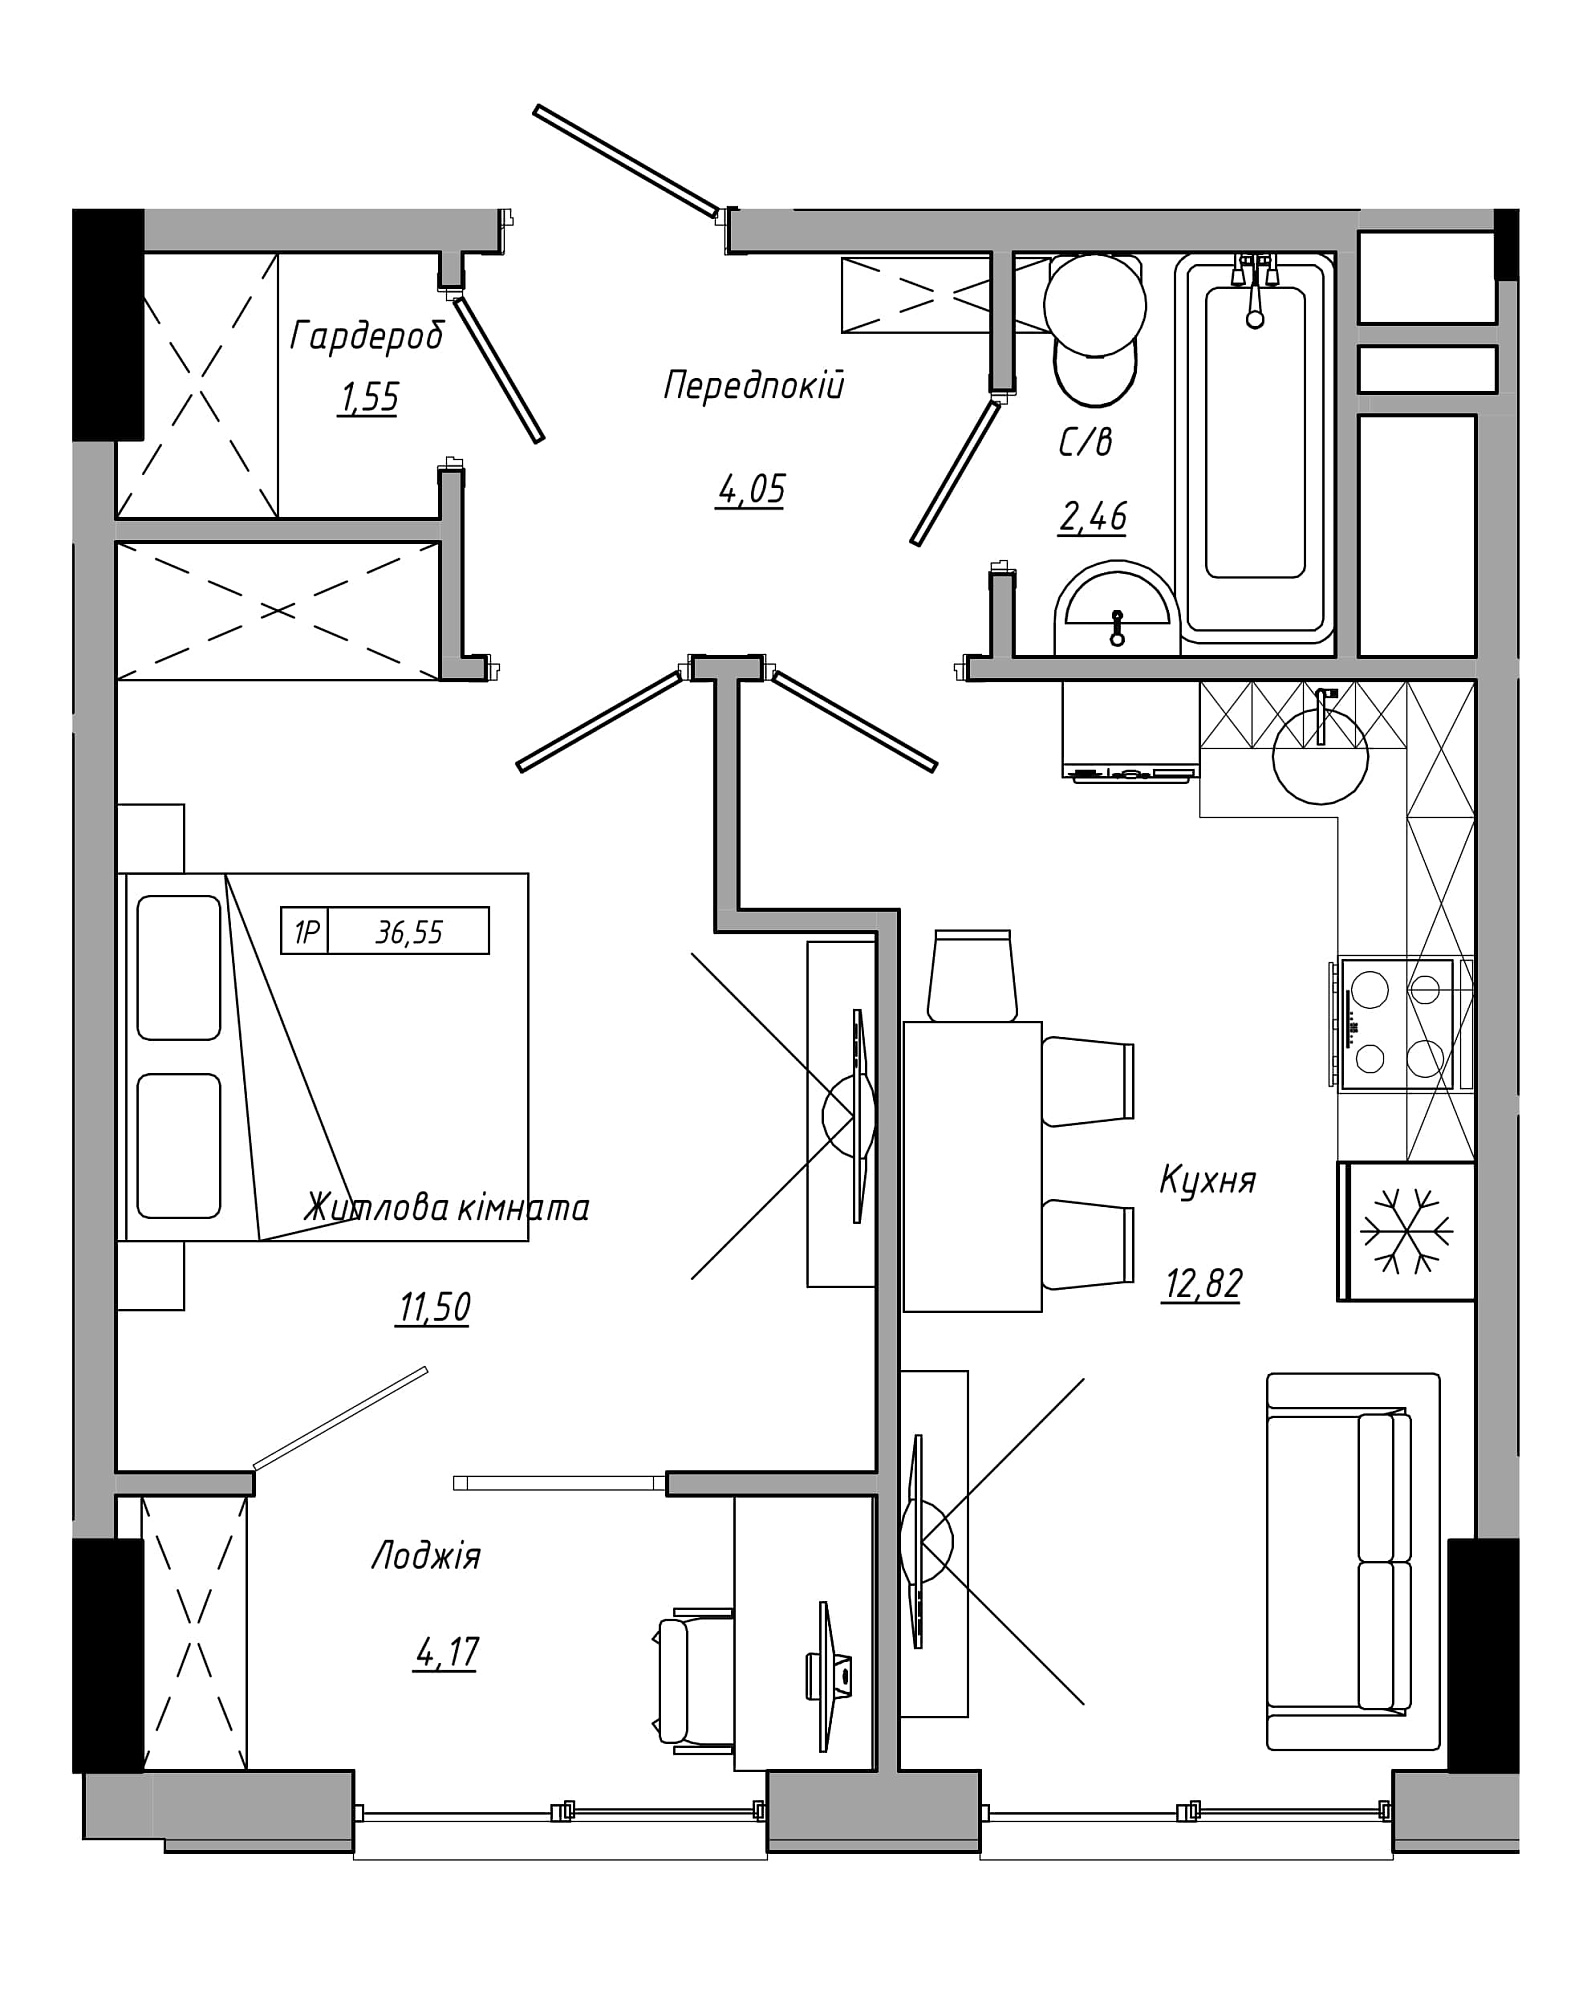 Планування 1-к квартира площею 36.55м2, AB-21-07/00020.